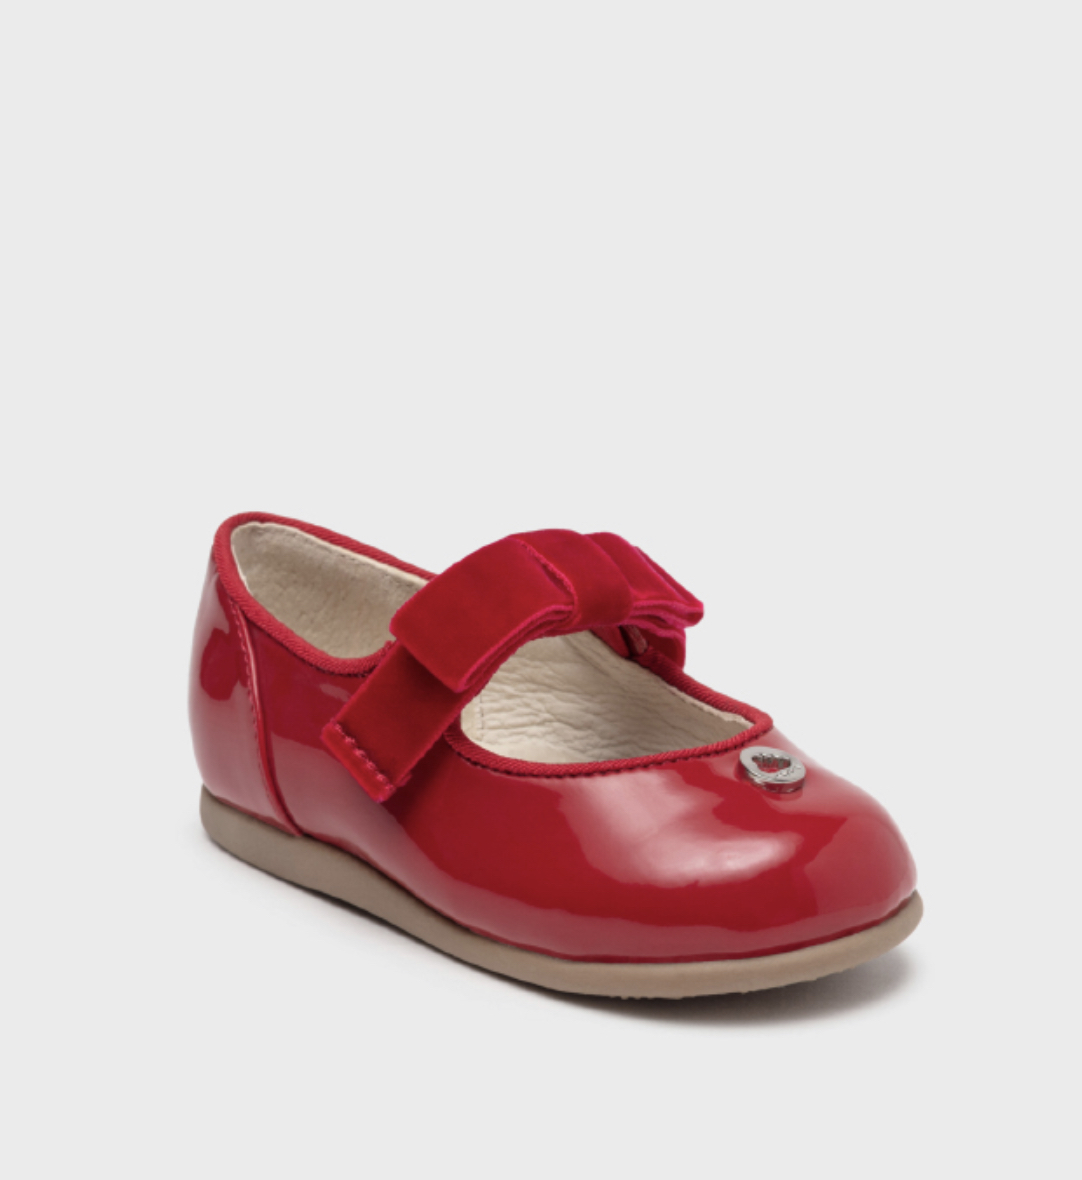 Emperor gradually Home country Pantofi roșii eleganți fete Mayoral